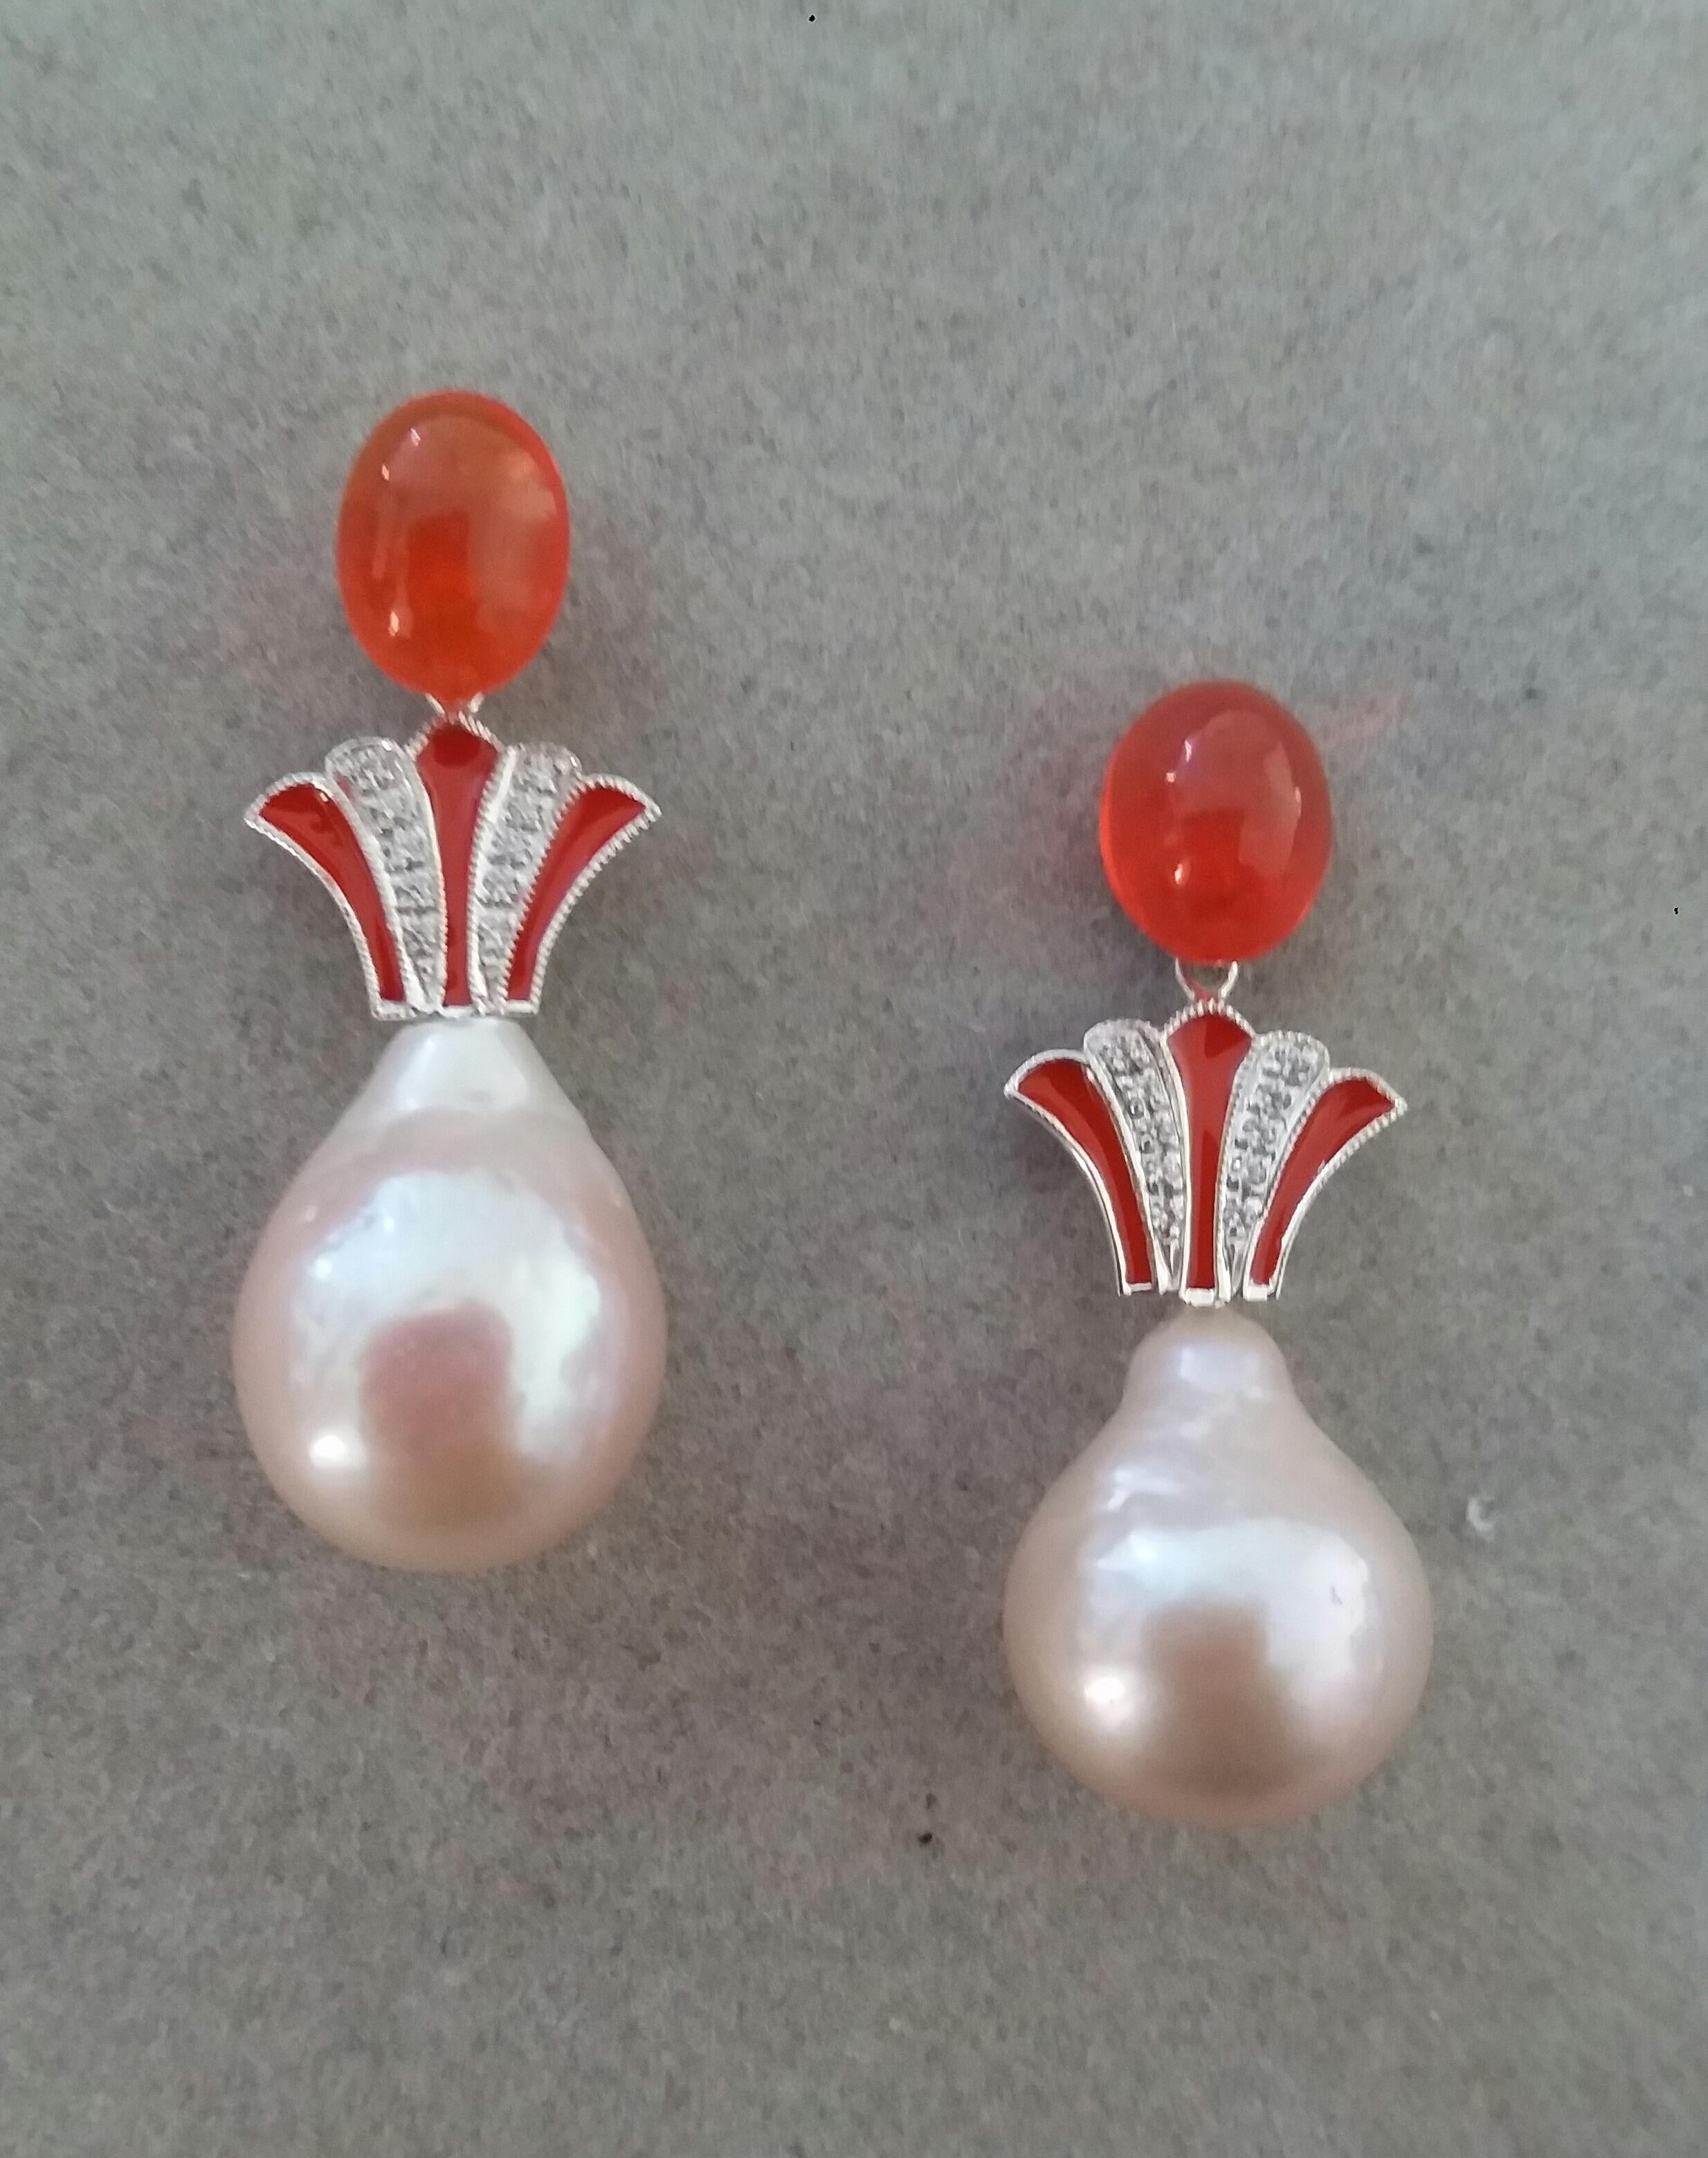 Einzigartiges Paar Ohrringe mit einem Paar ovaler Feueropal-Kabinen (7 x 9 mm) und einem Mittelteil, bestehend aus  zwei  14 kt. Weißgold-Elemente in Form einer Krone mit 20 runden Diamanten im Vollschliff und orangefarbener Emaille. In den unteren